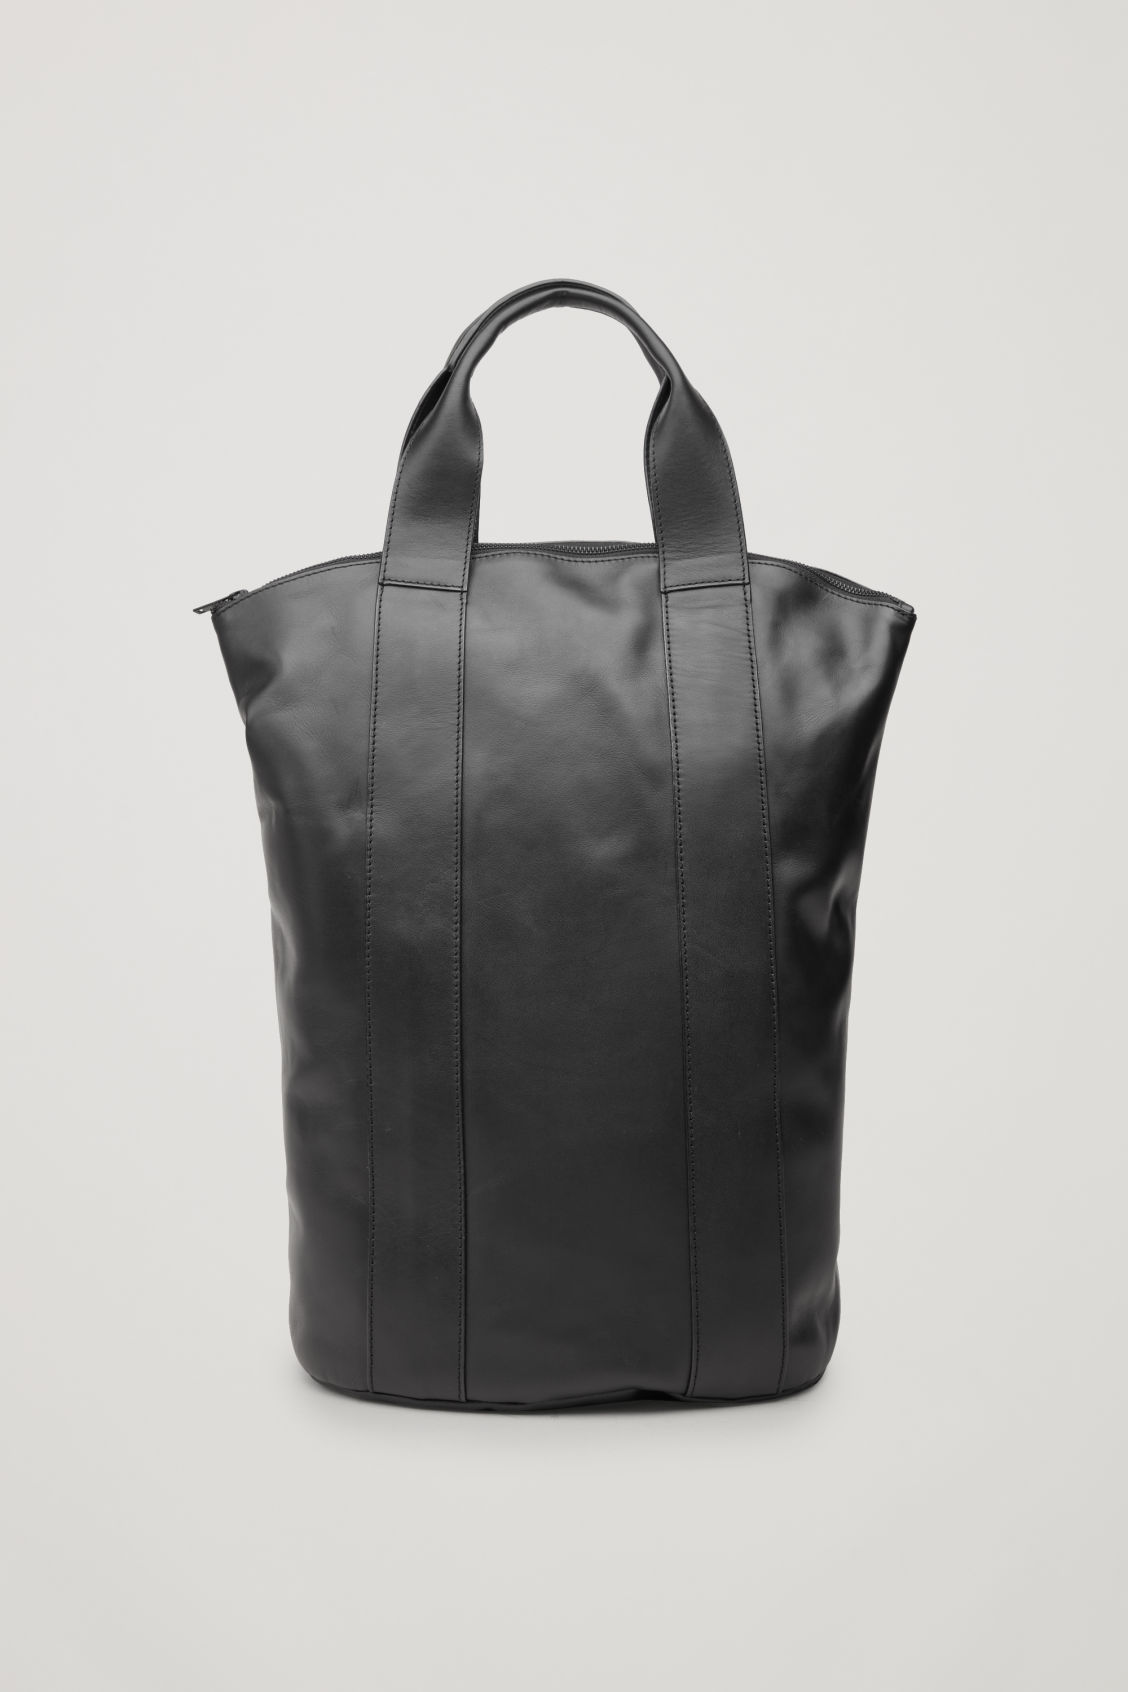 17160円 !超美品再入荷品質至上! COS leather tote bag